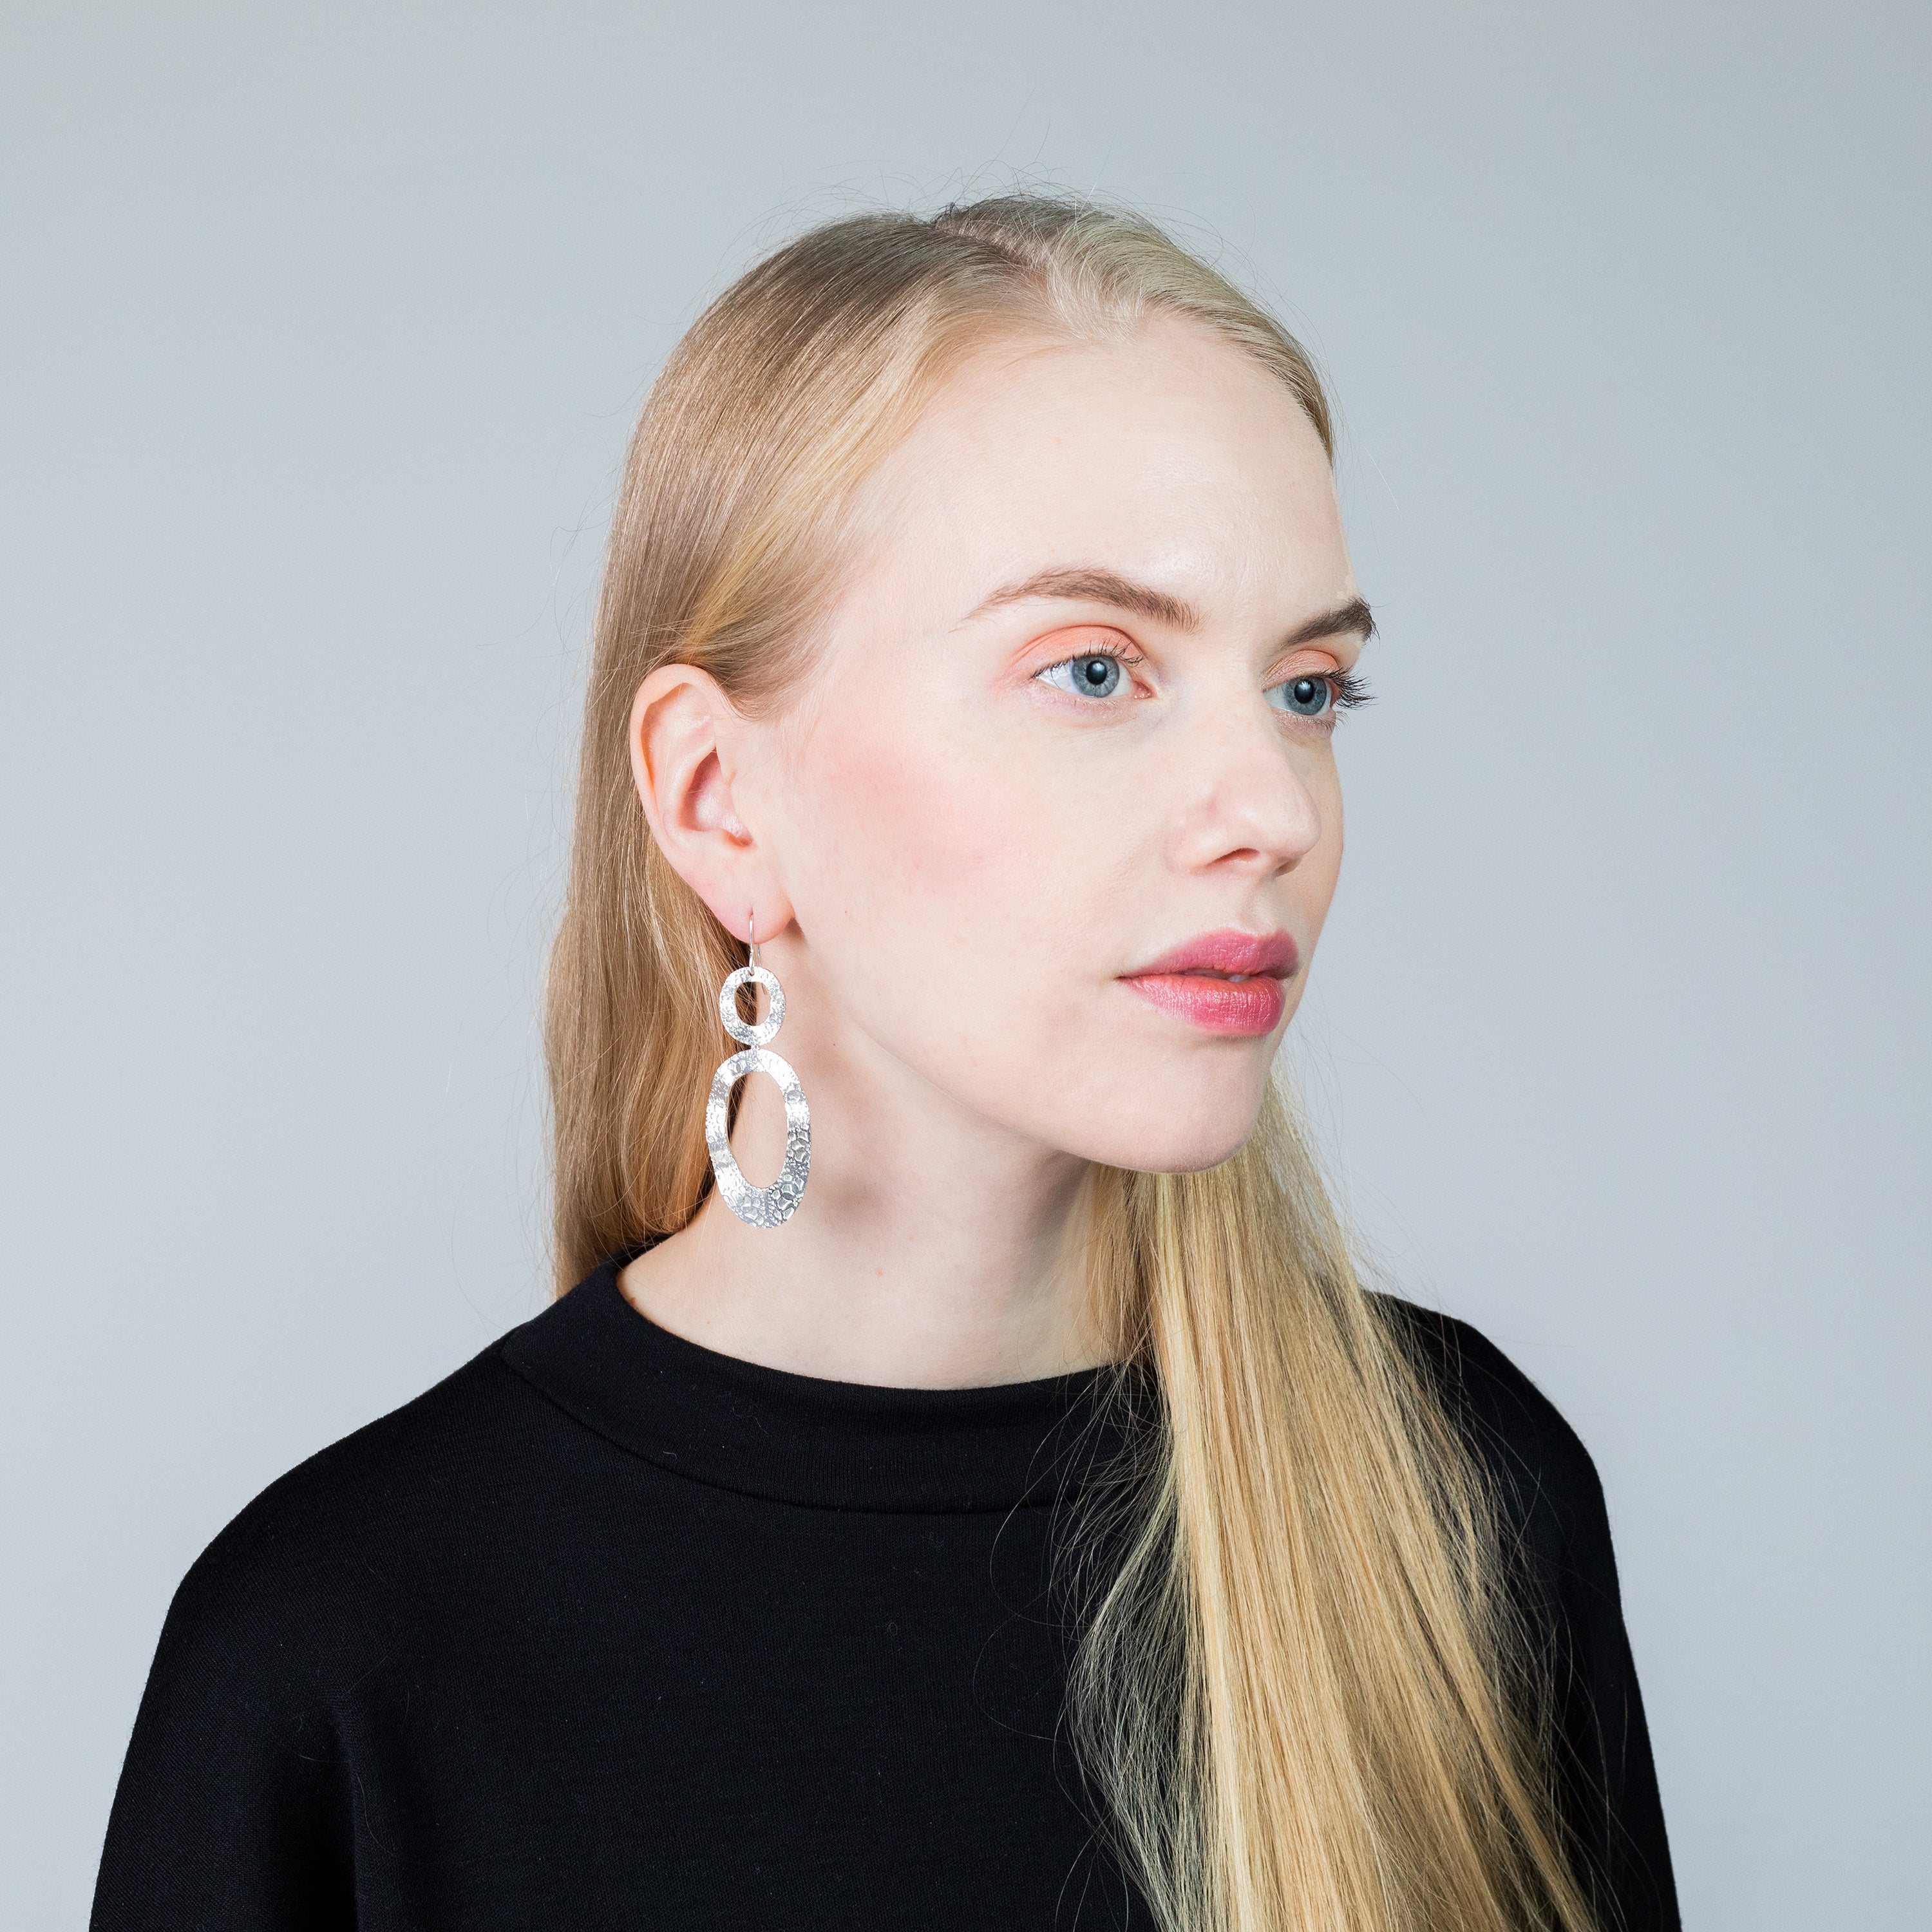 LACE statement earrings